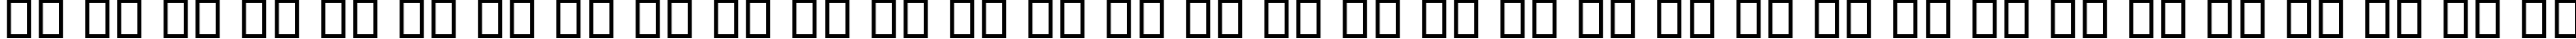 Пример написания русского алфавита шрифтом B Compset Bold